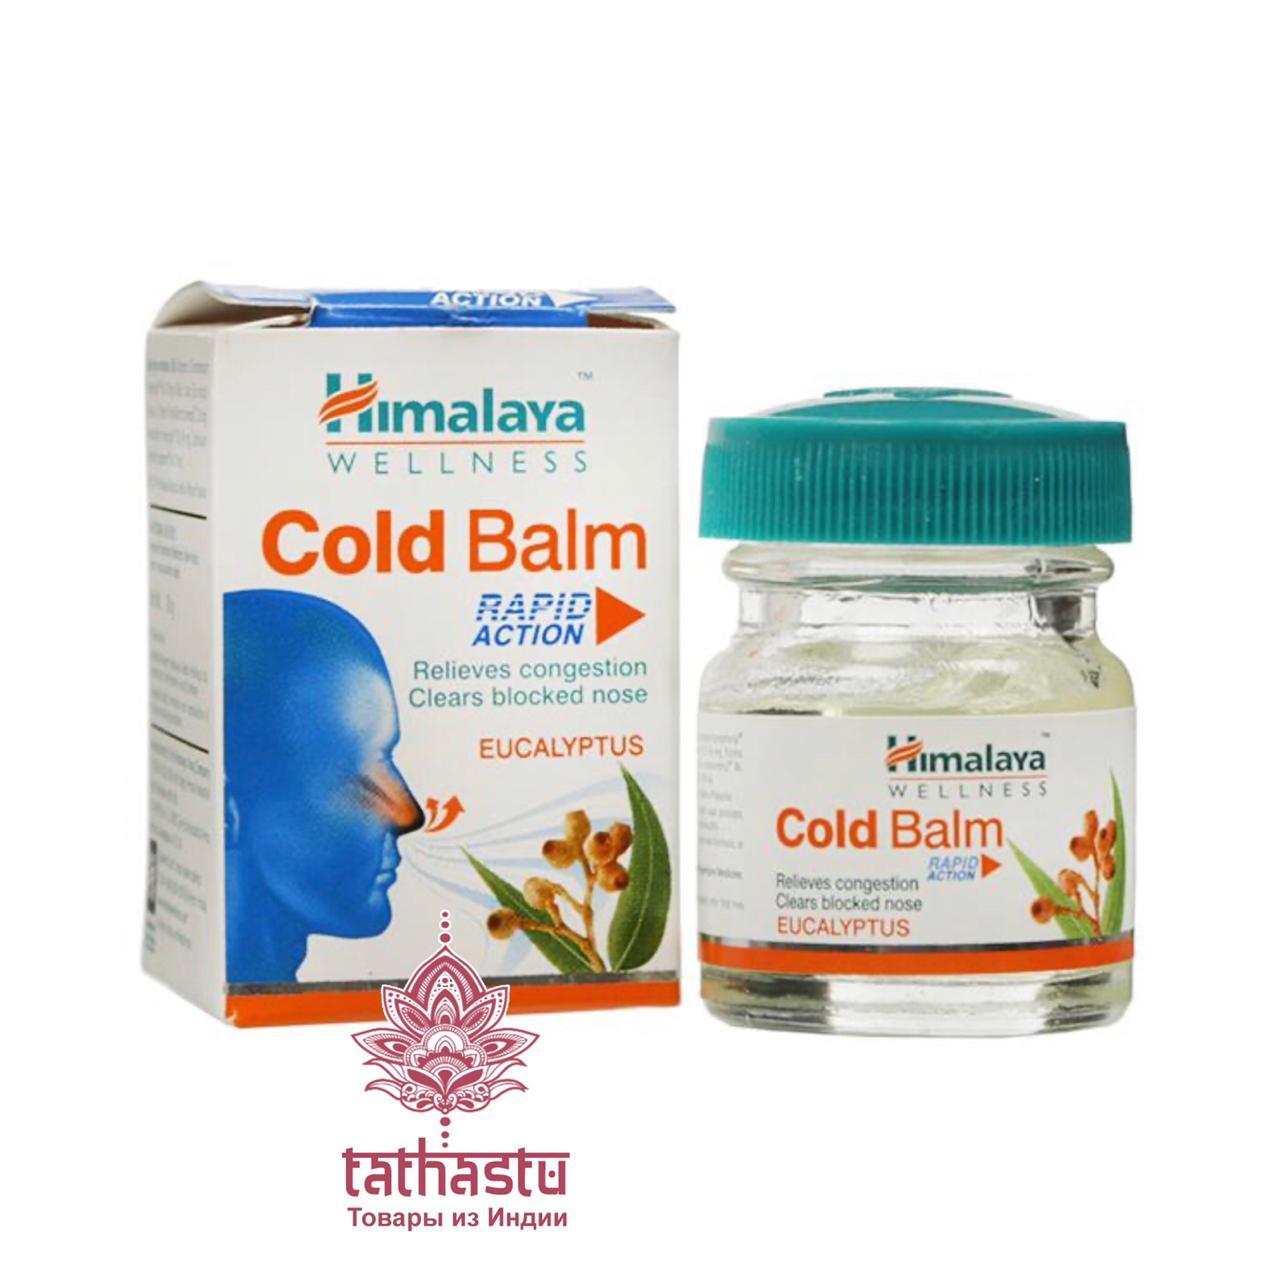 Cold Balm - бальзам от простуды и головной боли . Tathastu товары и индии